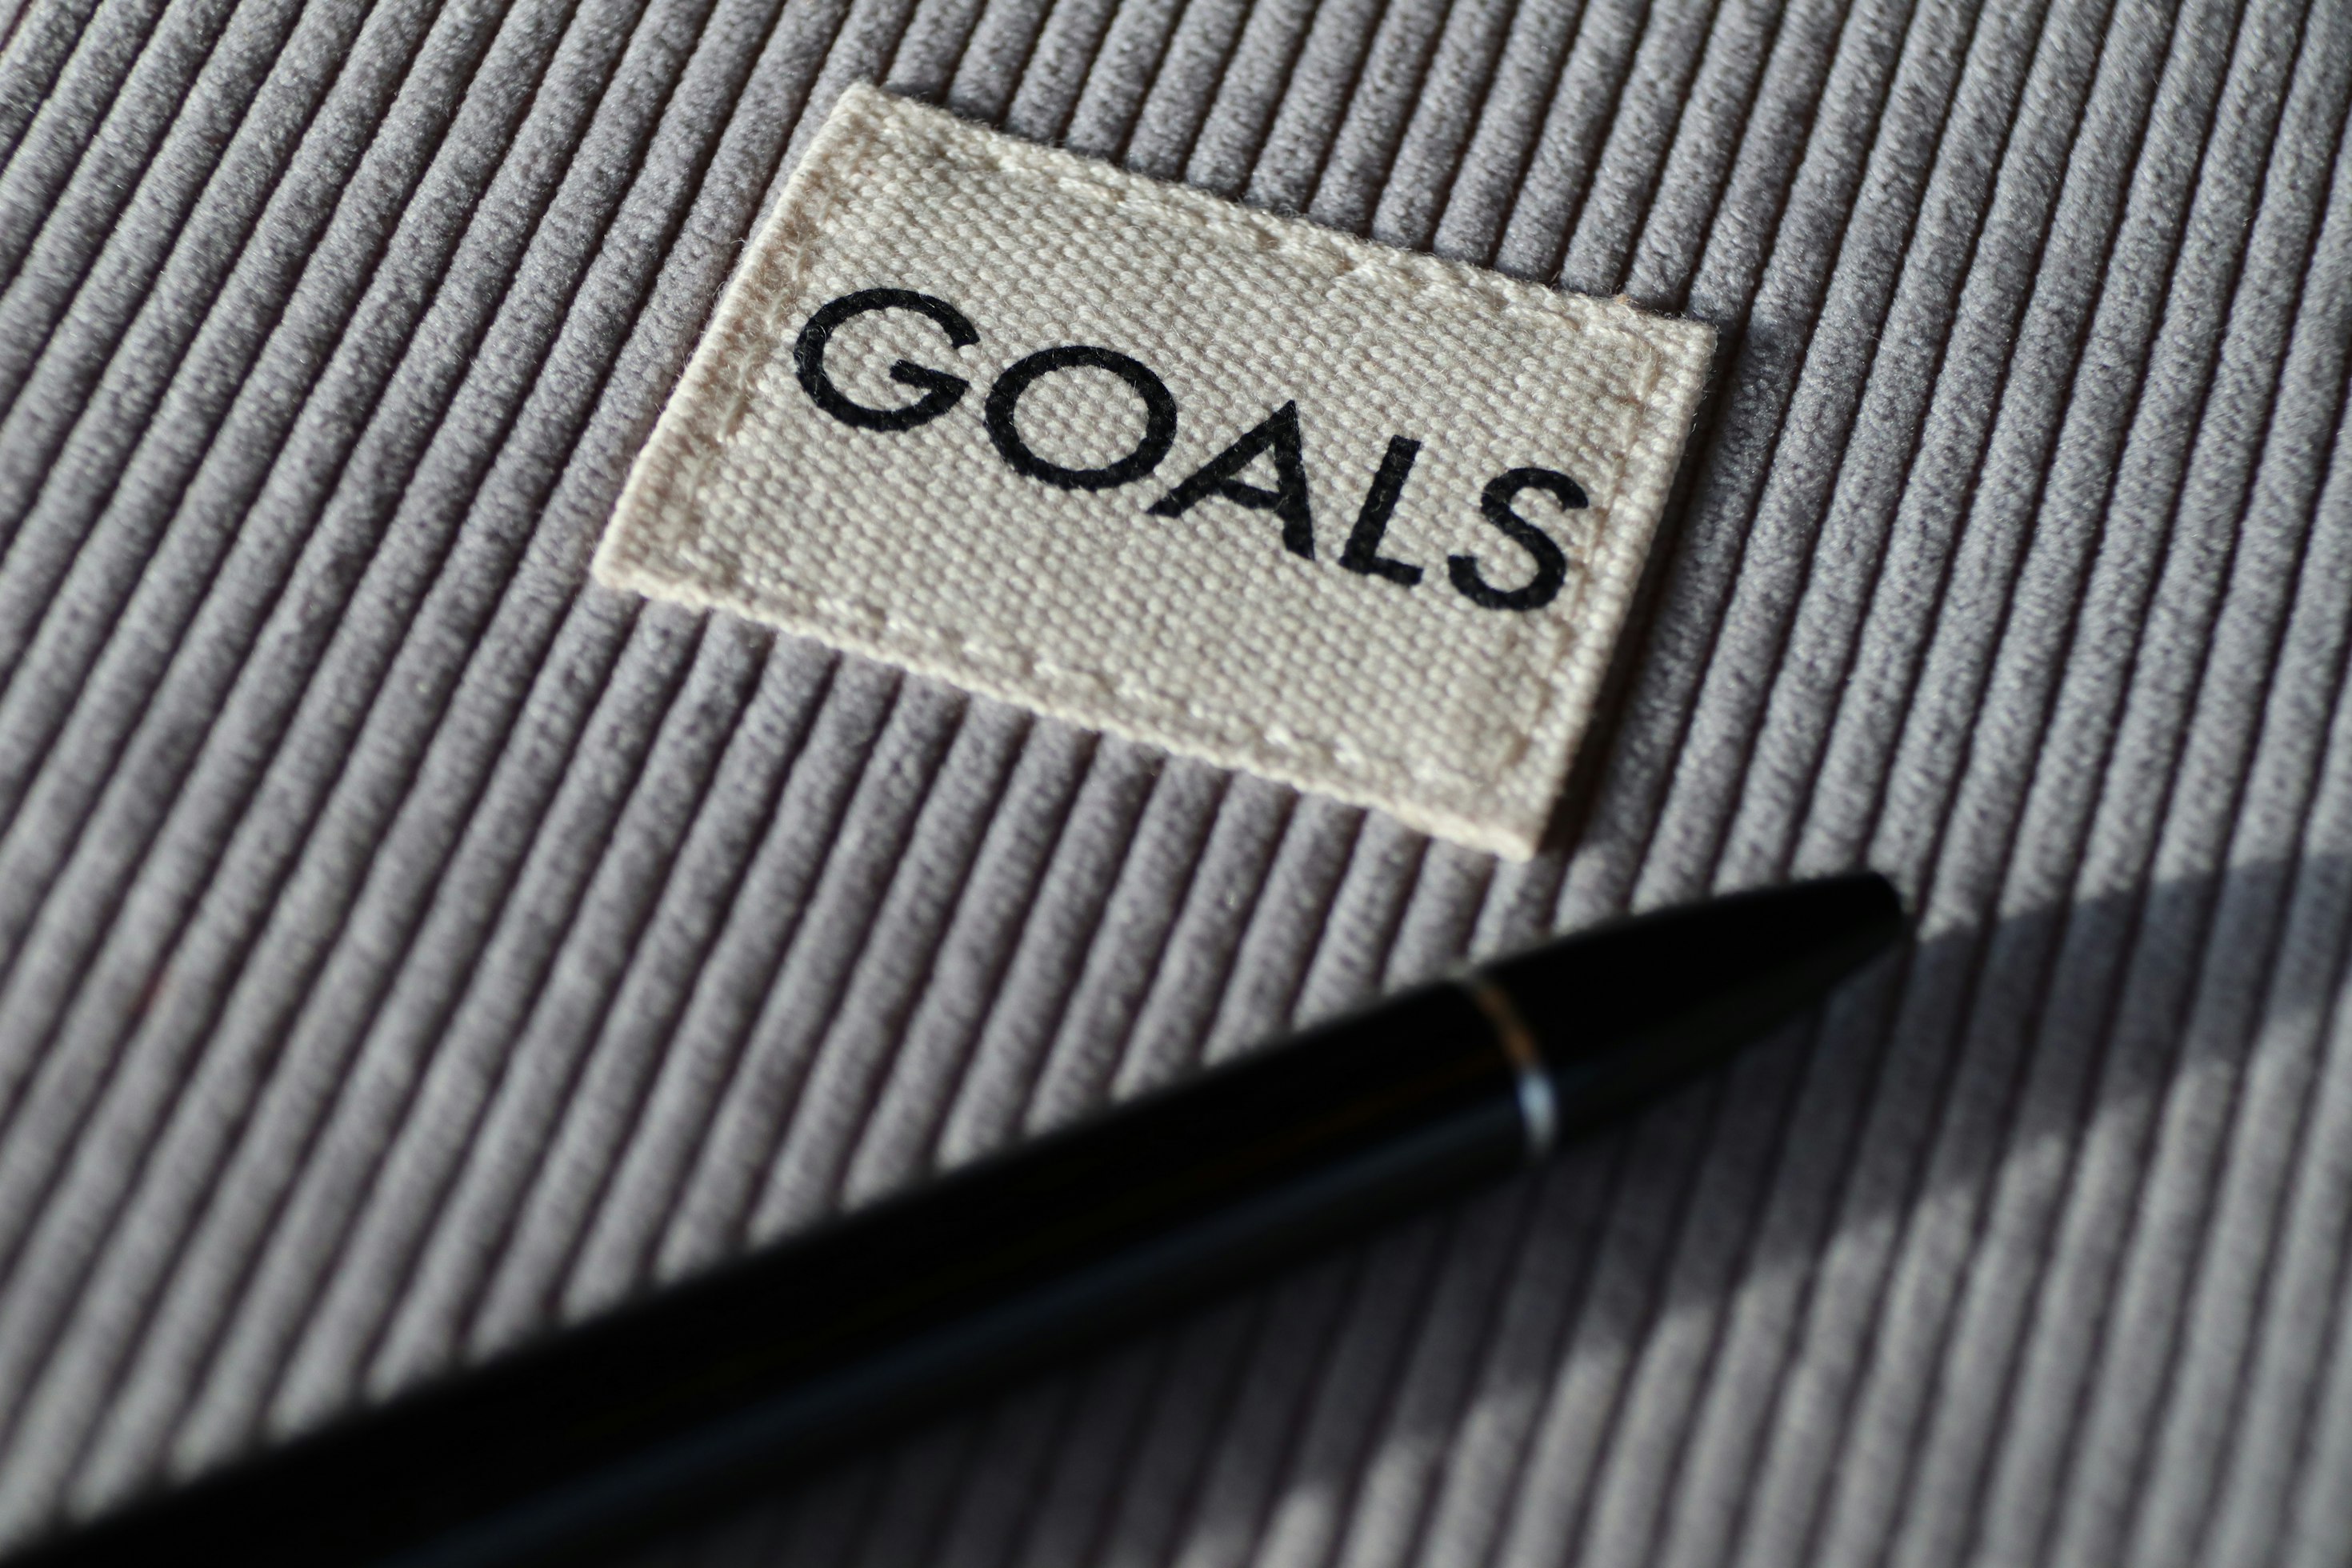 Settings Goals for developer-focused events